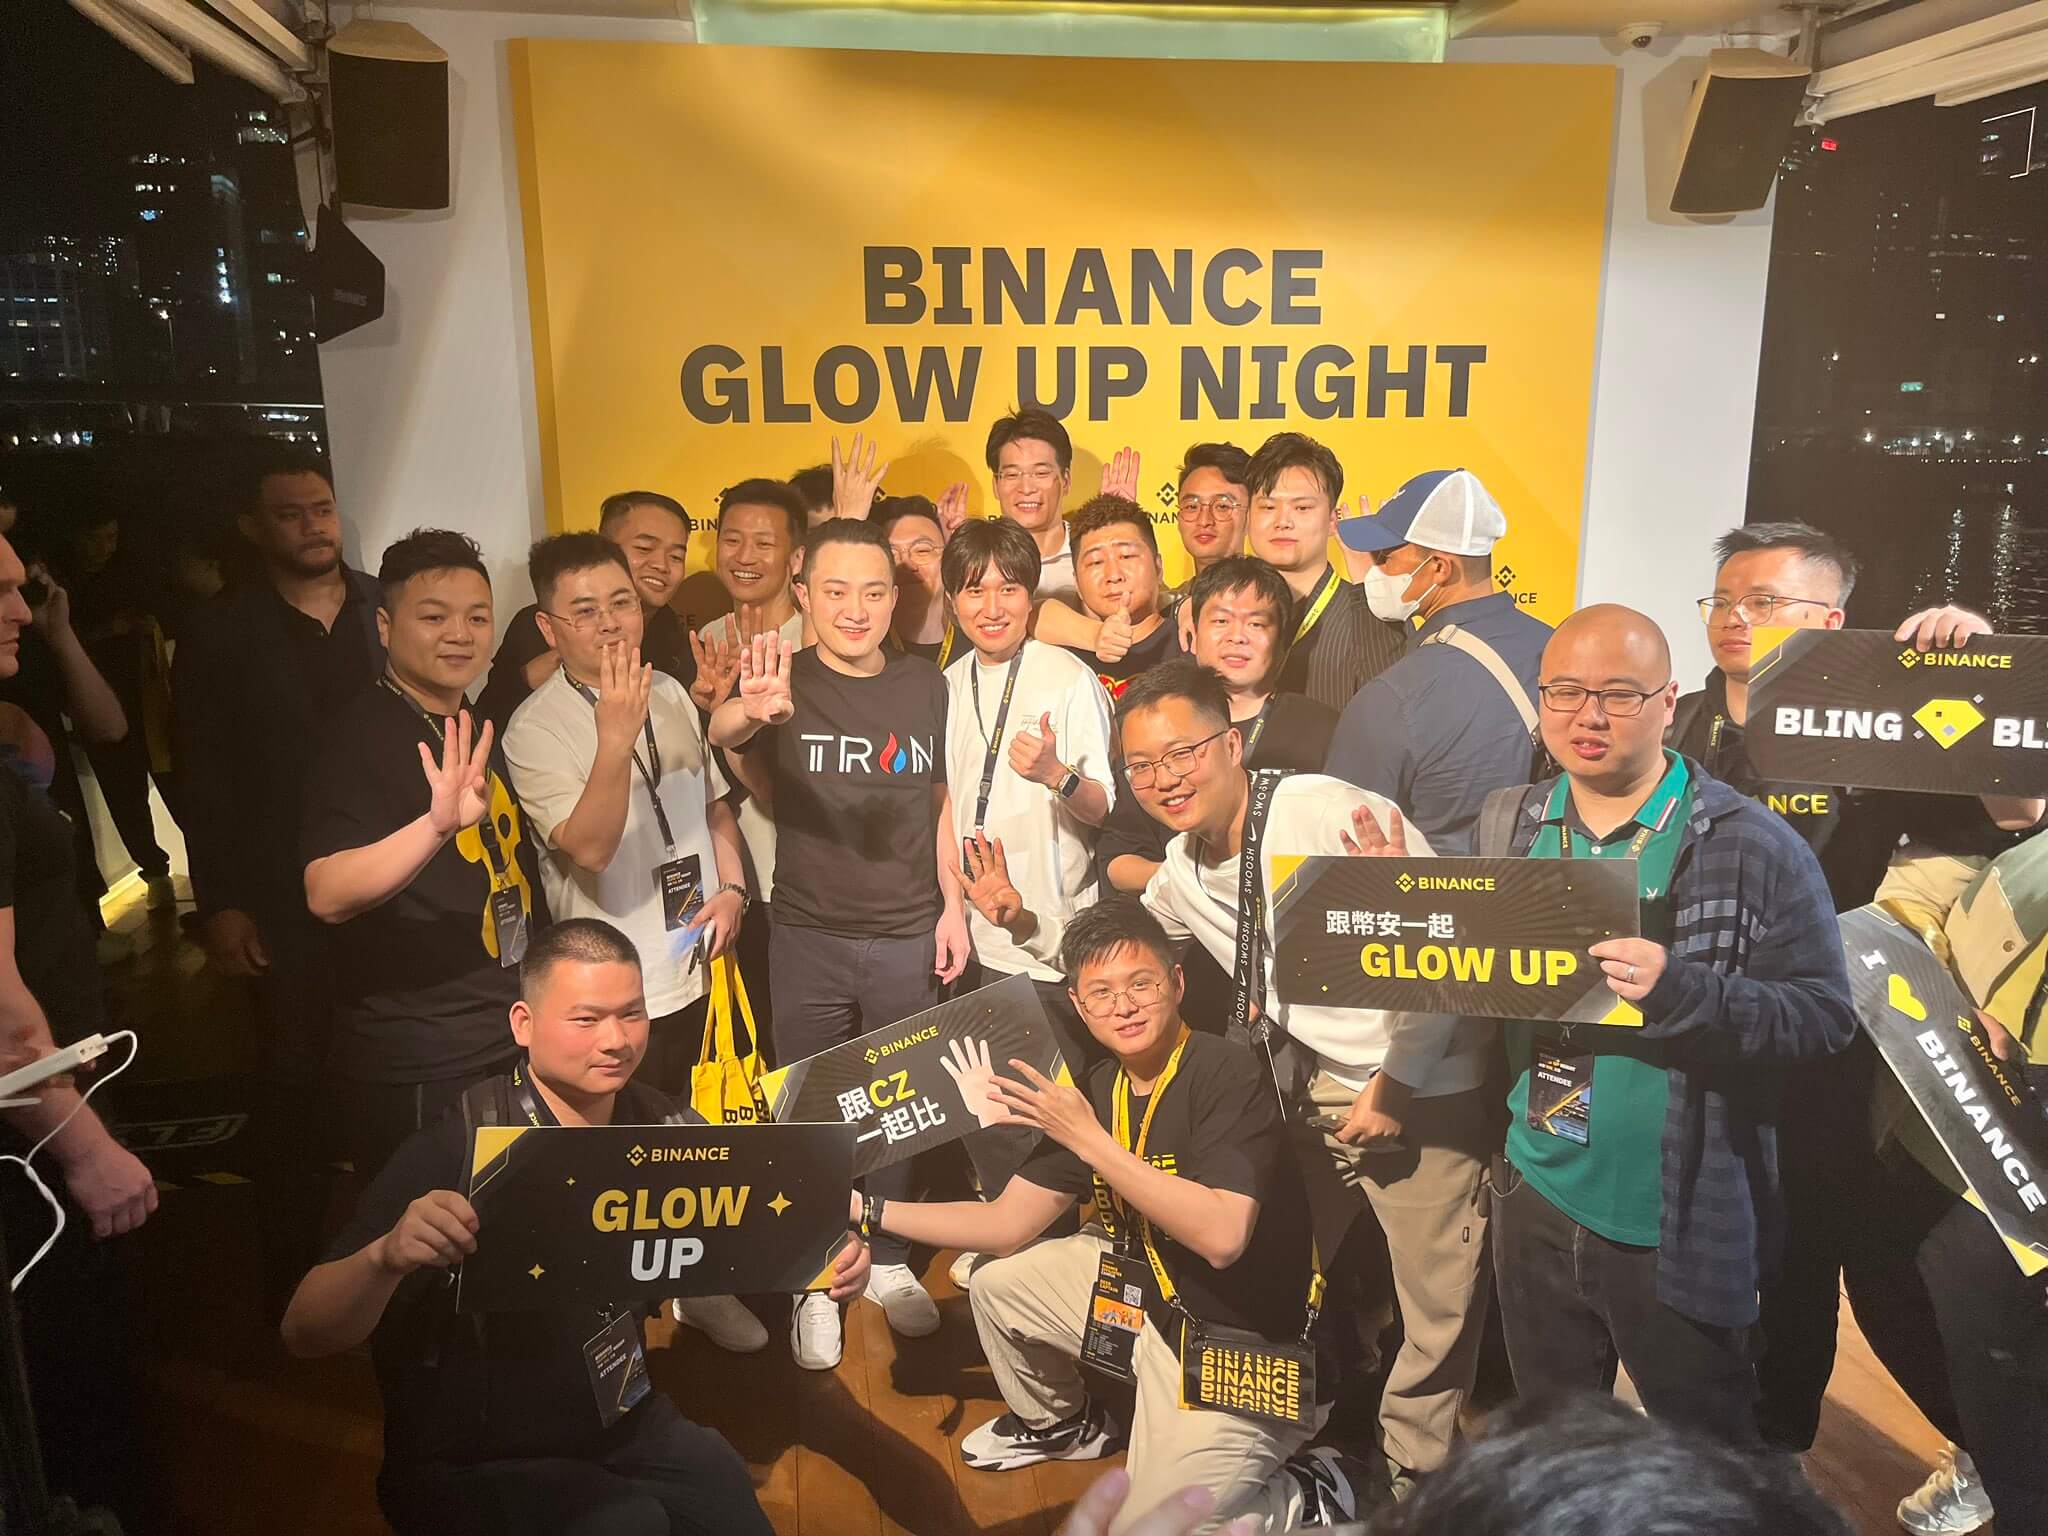 Почему криптовалютные компании переезжают. Фотография с вечеринки Glow Up Night в Гонконге от криптобиржи Binance. Фото.